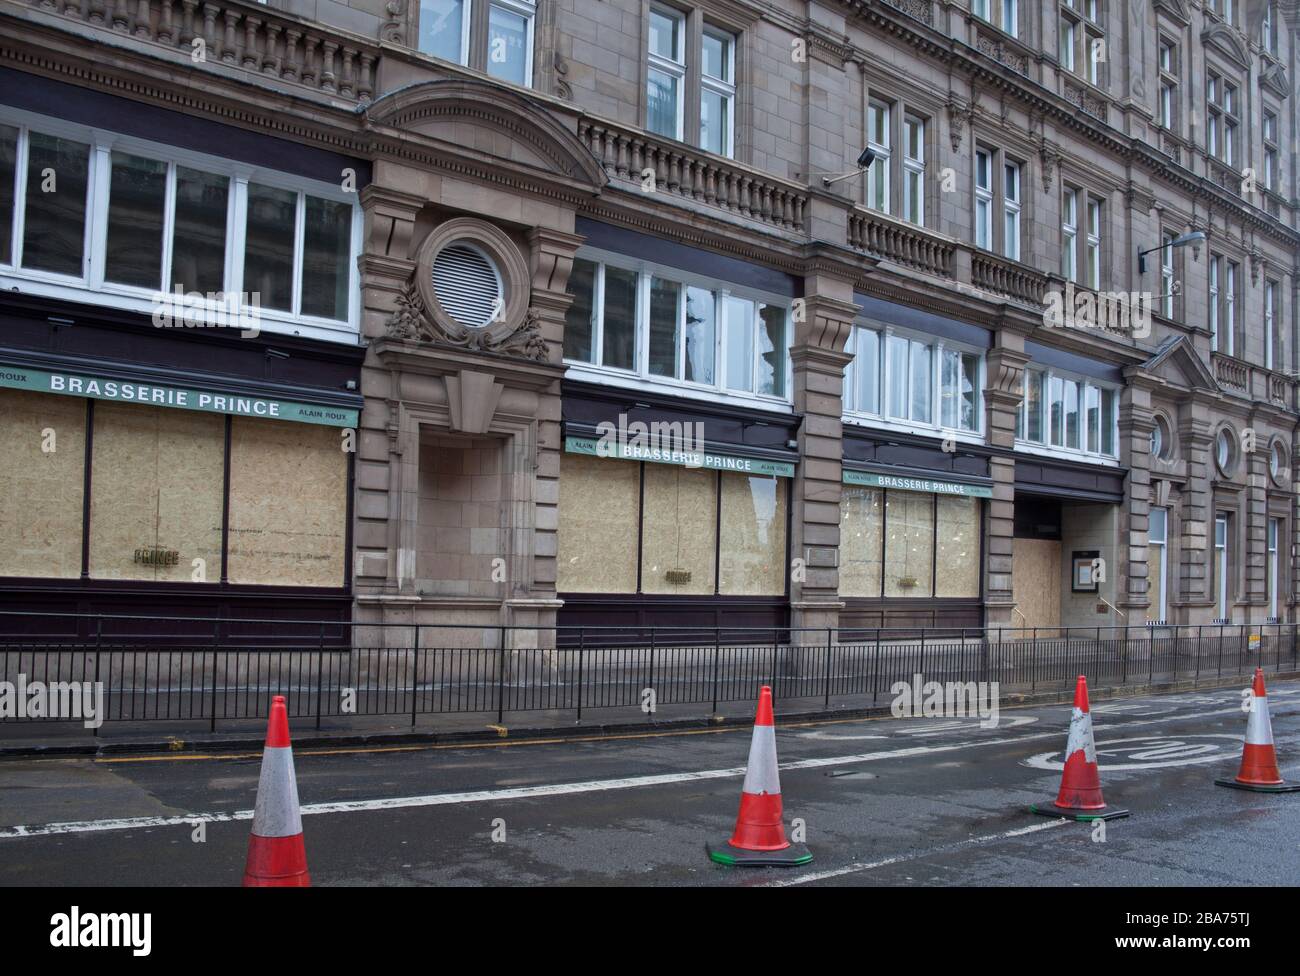 Princes Street, Edinburgh, Schottland, Großbritannien. März 2020. An diesem dritten Tag von Lockdown in Großbritannien erwacht die Princes Street, um zu entdecken, dass das Balmoral Hotel die Fenster aufgestiegen hat und geschlossen hat, dass die Besitzer die Geschäfte für eine begrenzte Zeit ausgesetzt haben. Stockfoto